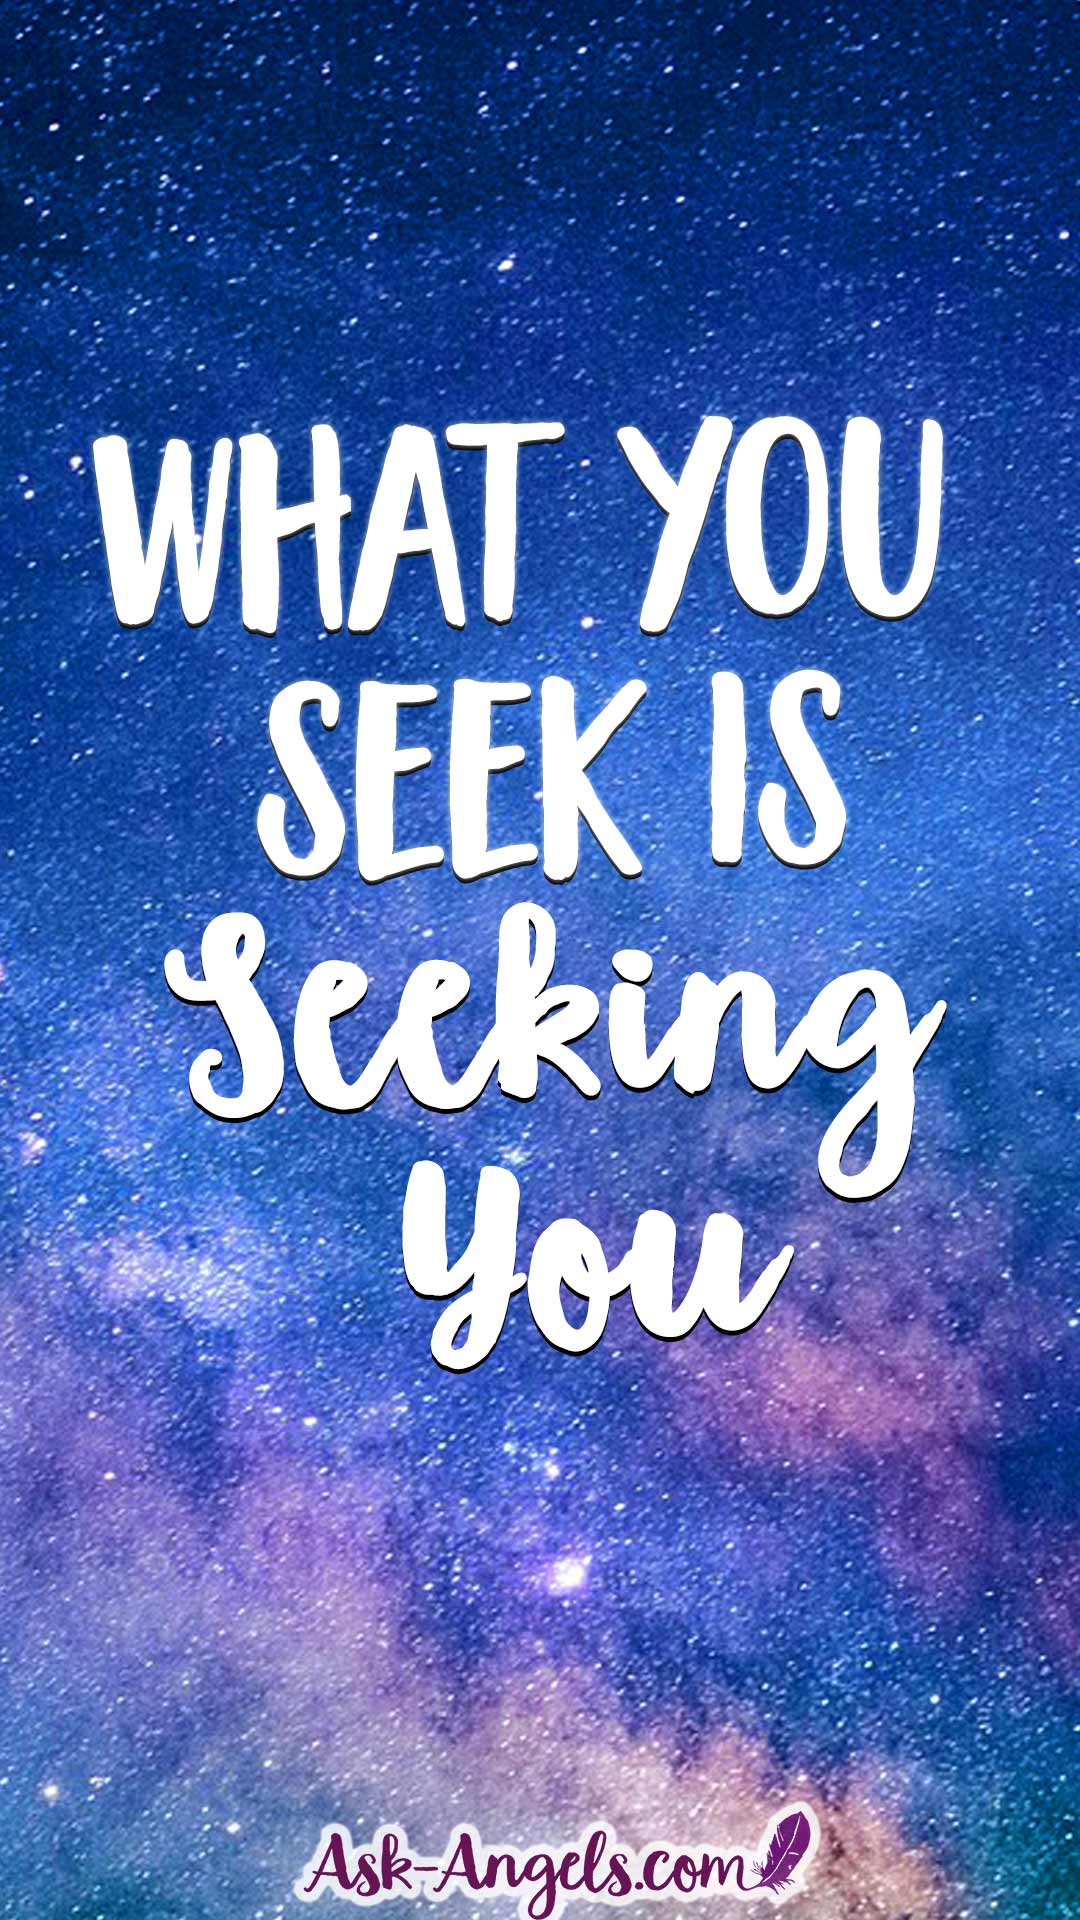 What You Seek Is Seeking You